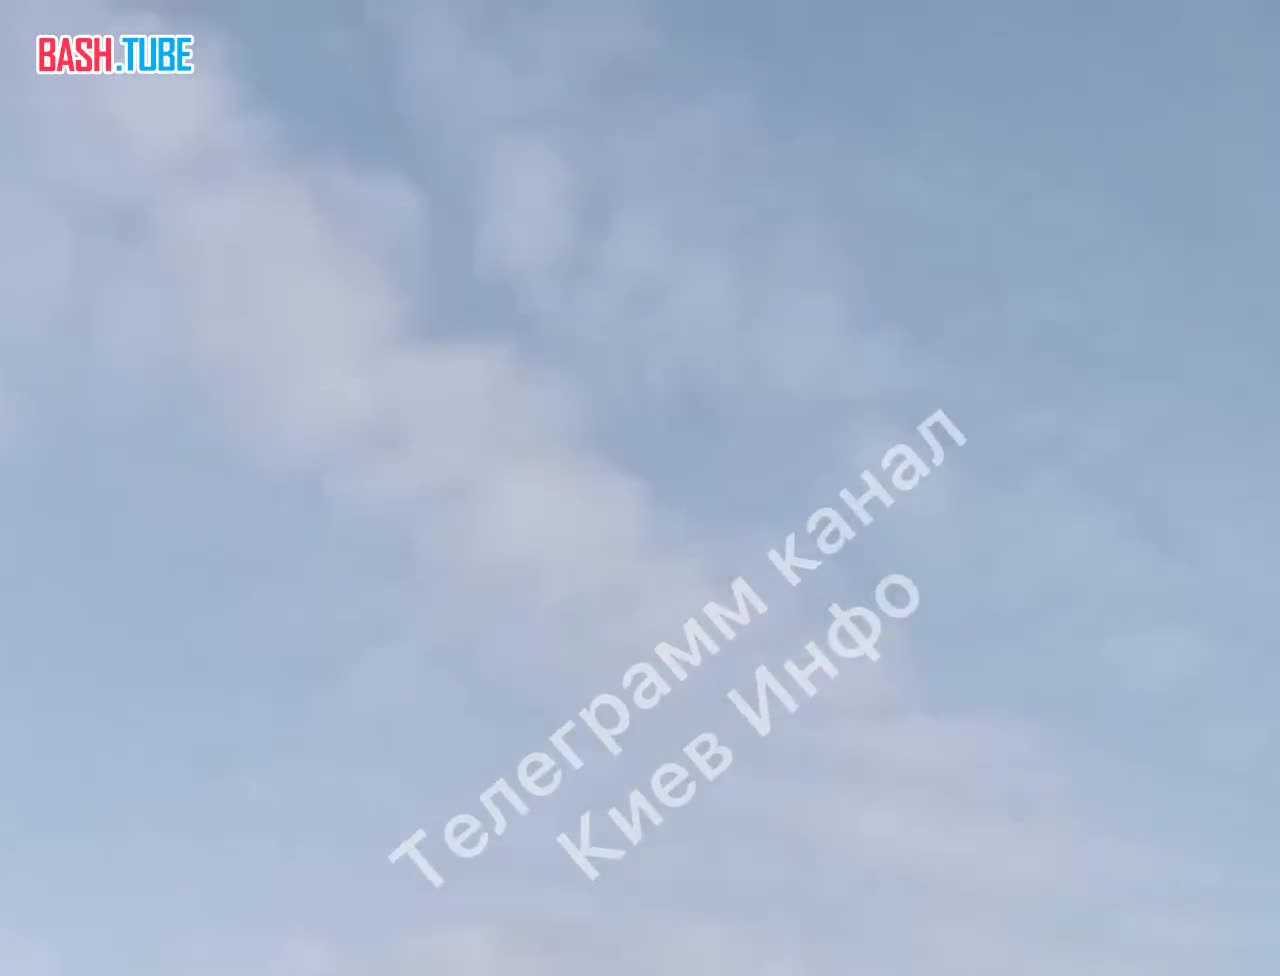  Пролет крылатой ракеты над Киевом. На фоне слышна работа ПВО